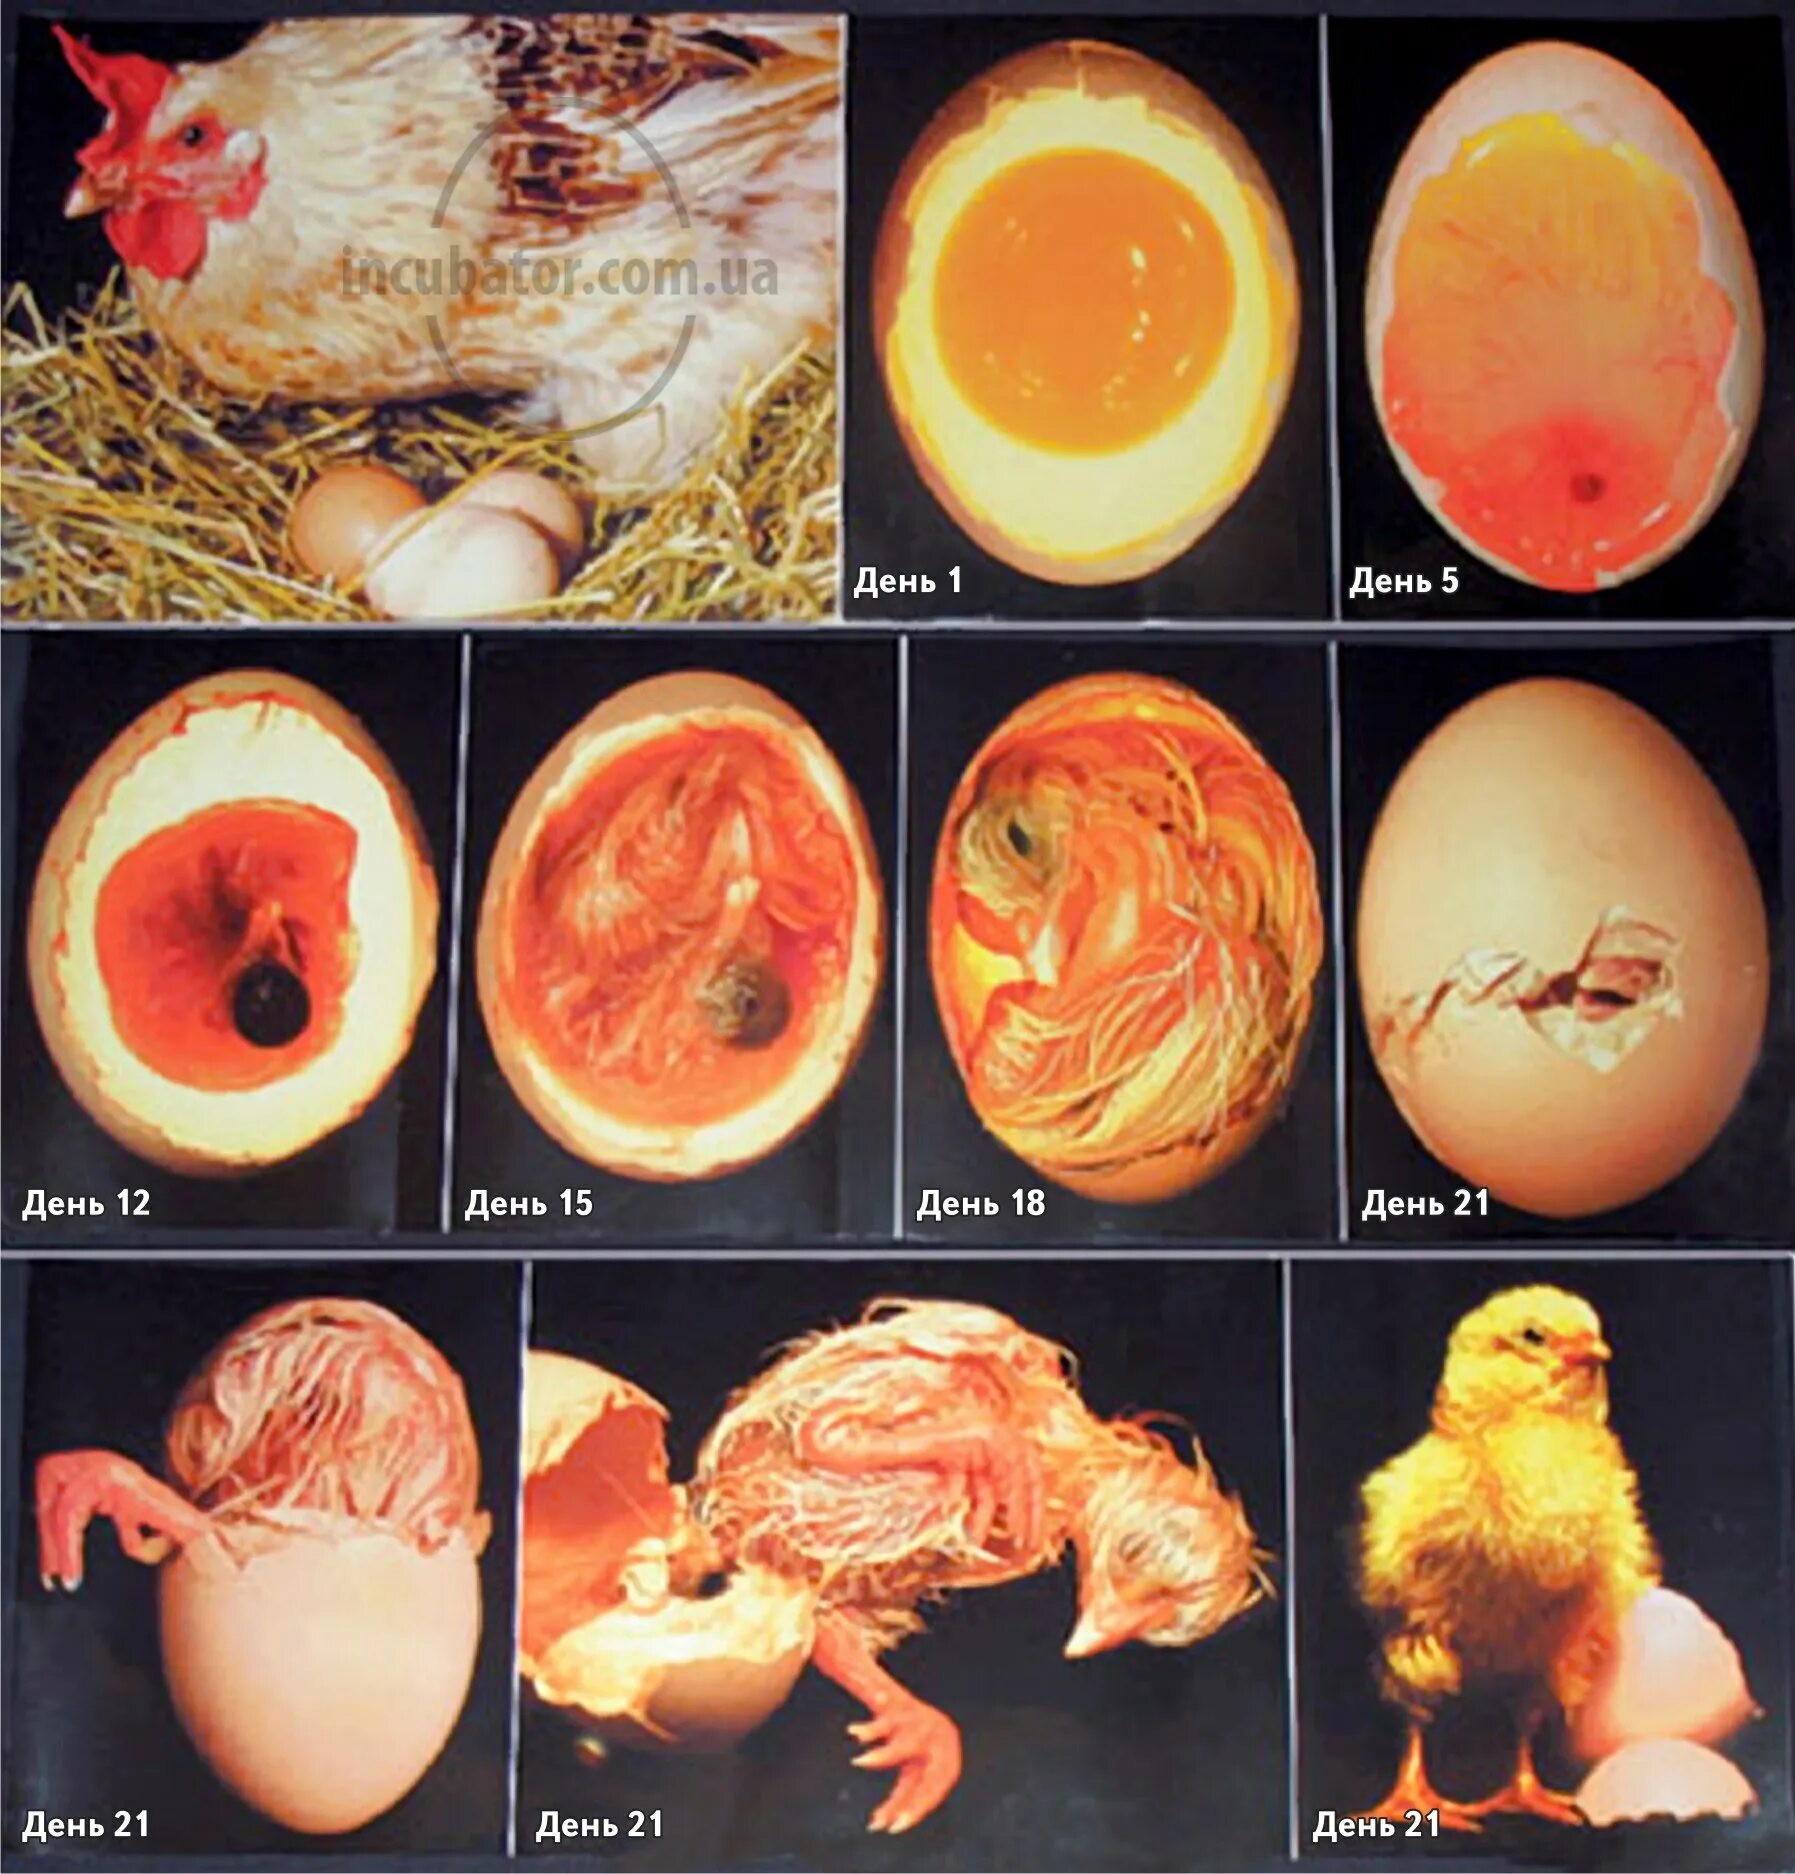 Пол недельного цыпленка. Стадия развития куриного инкубационного яйца. Овоскопирование утиных яиц. Яйцо индейки инкубационное овоскопирование. Инкубация утиных яиц овоскопирование.